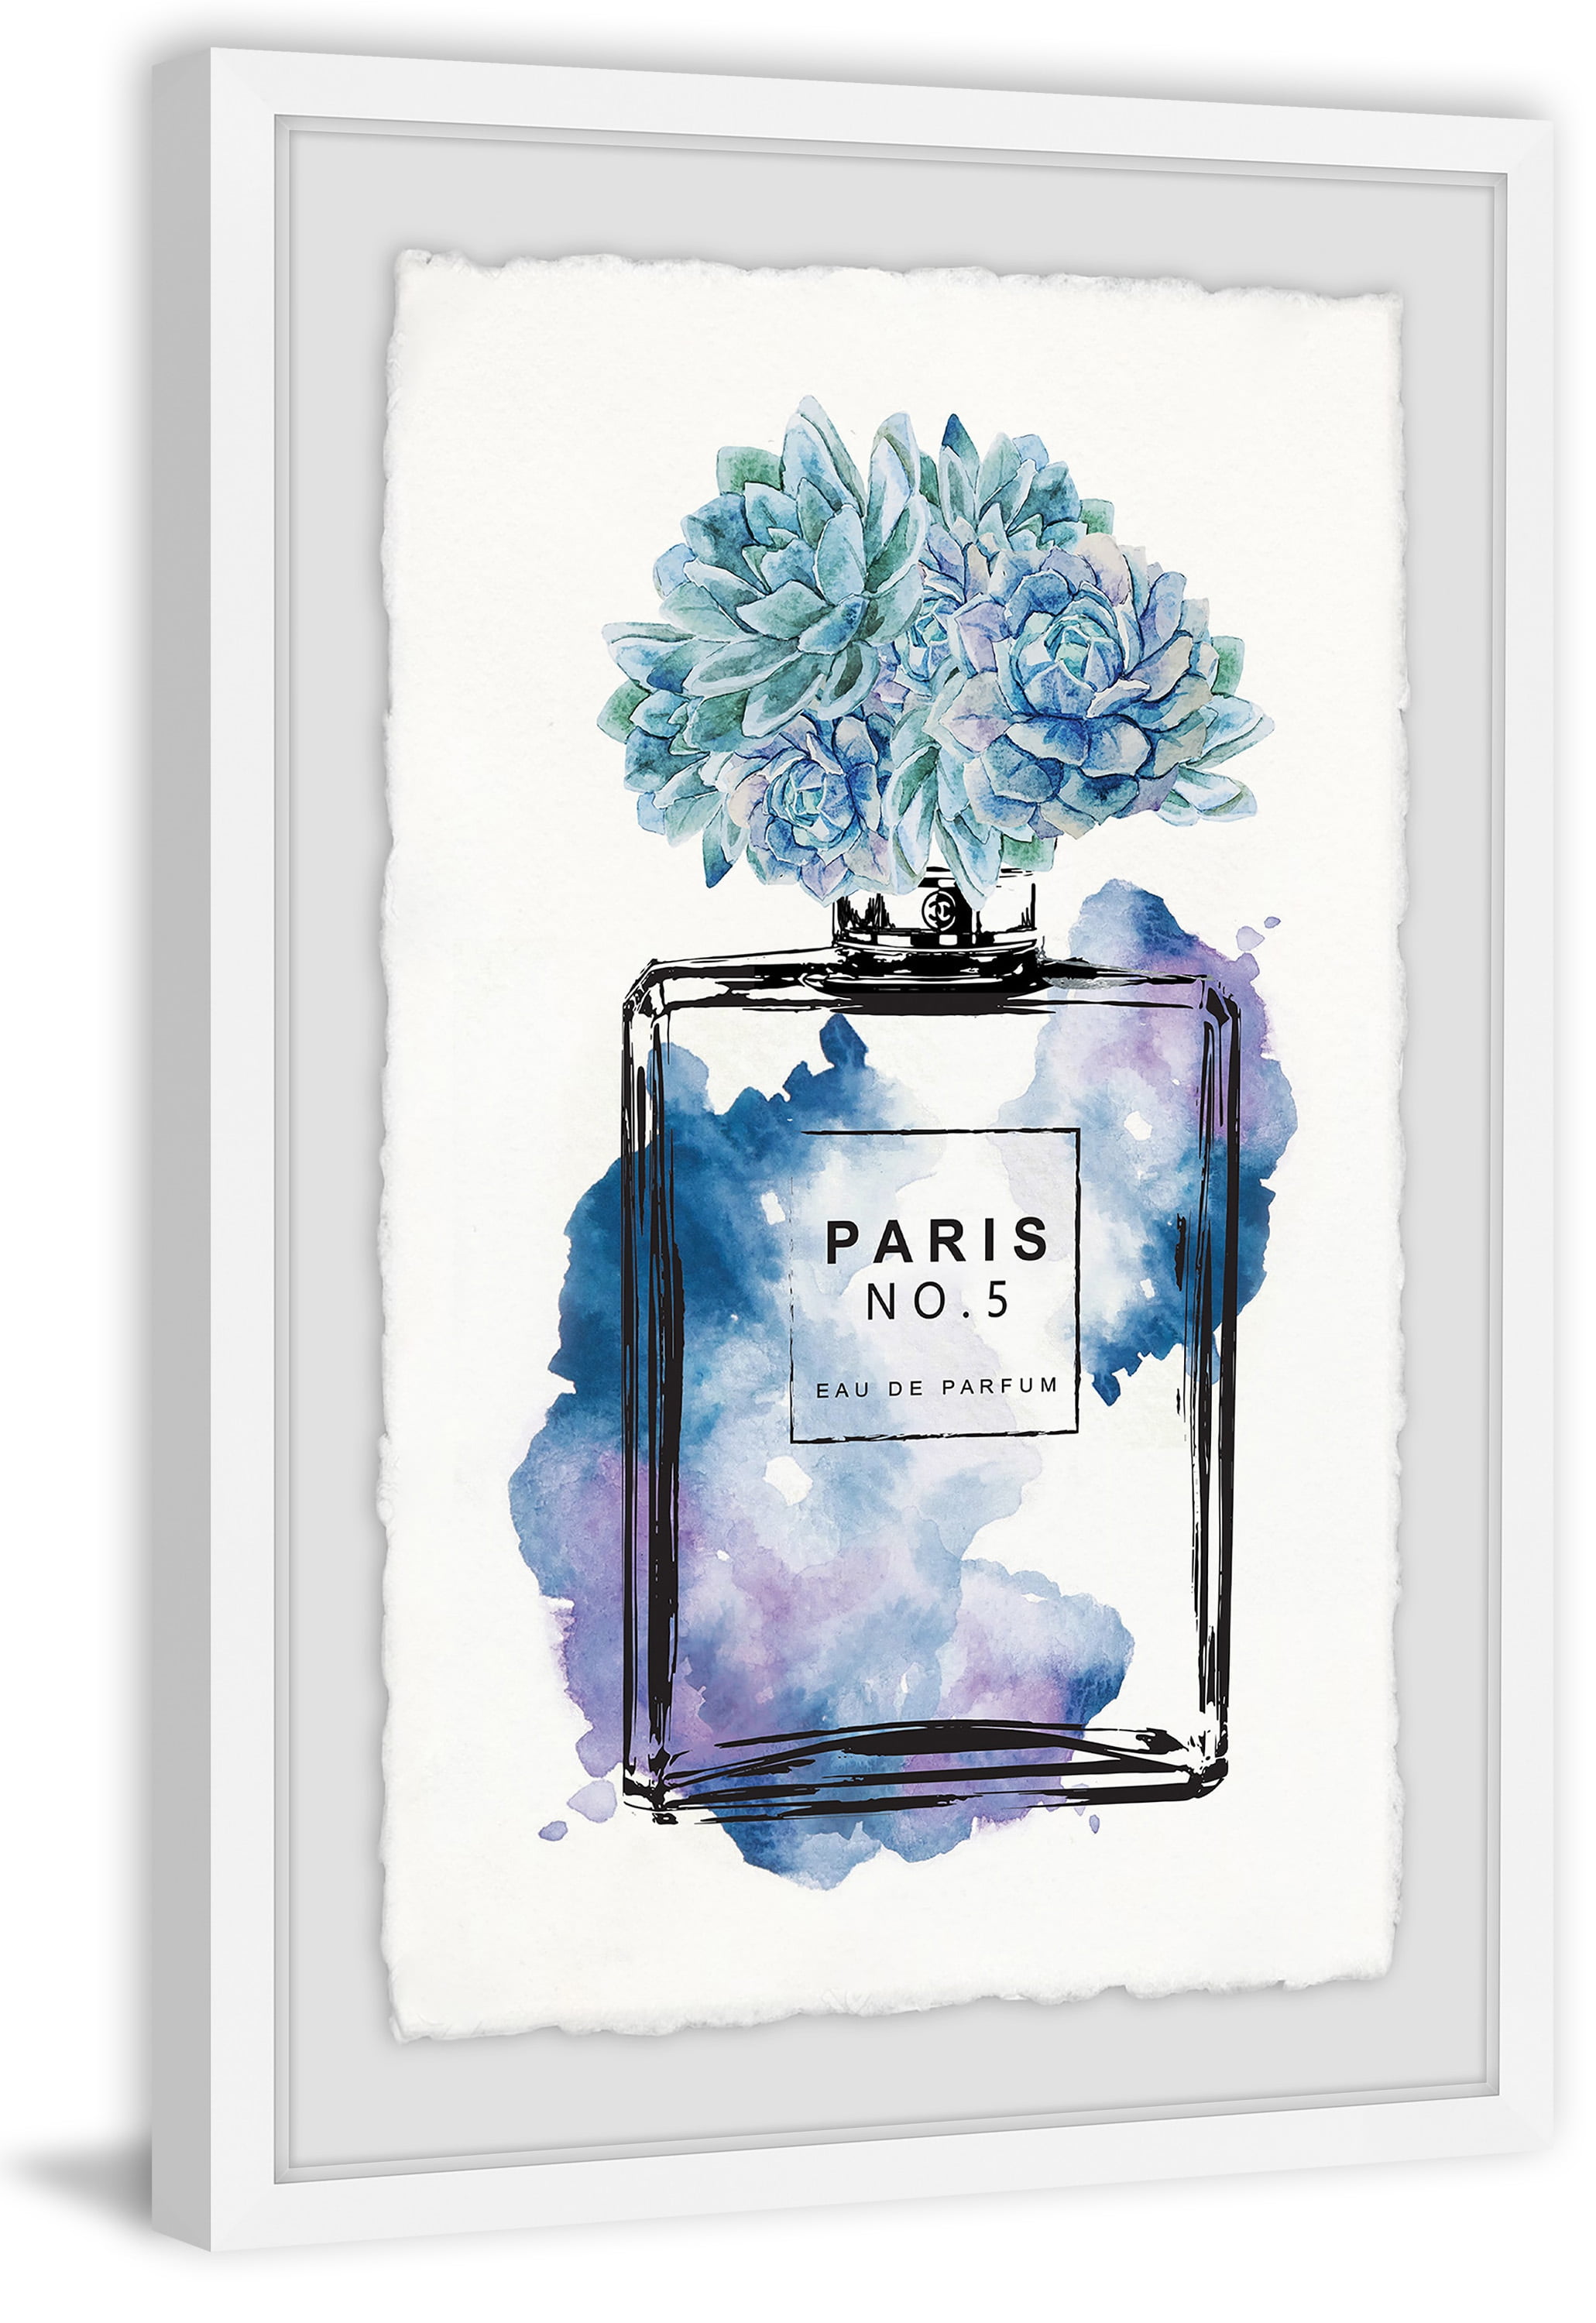 Purple Paris No. 5 Eau de Parfum Framed Painting Print 